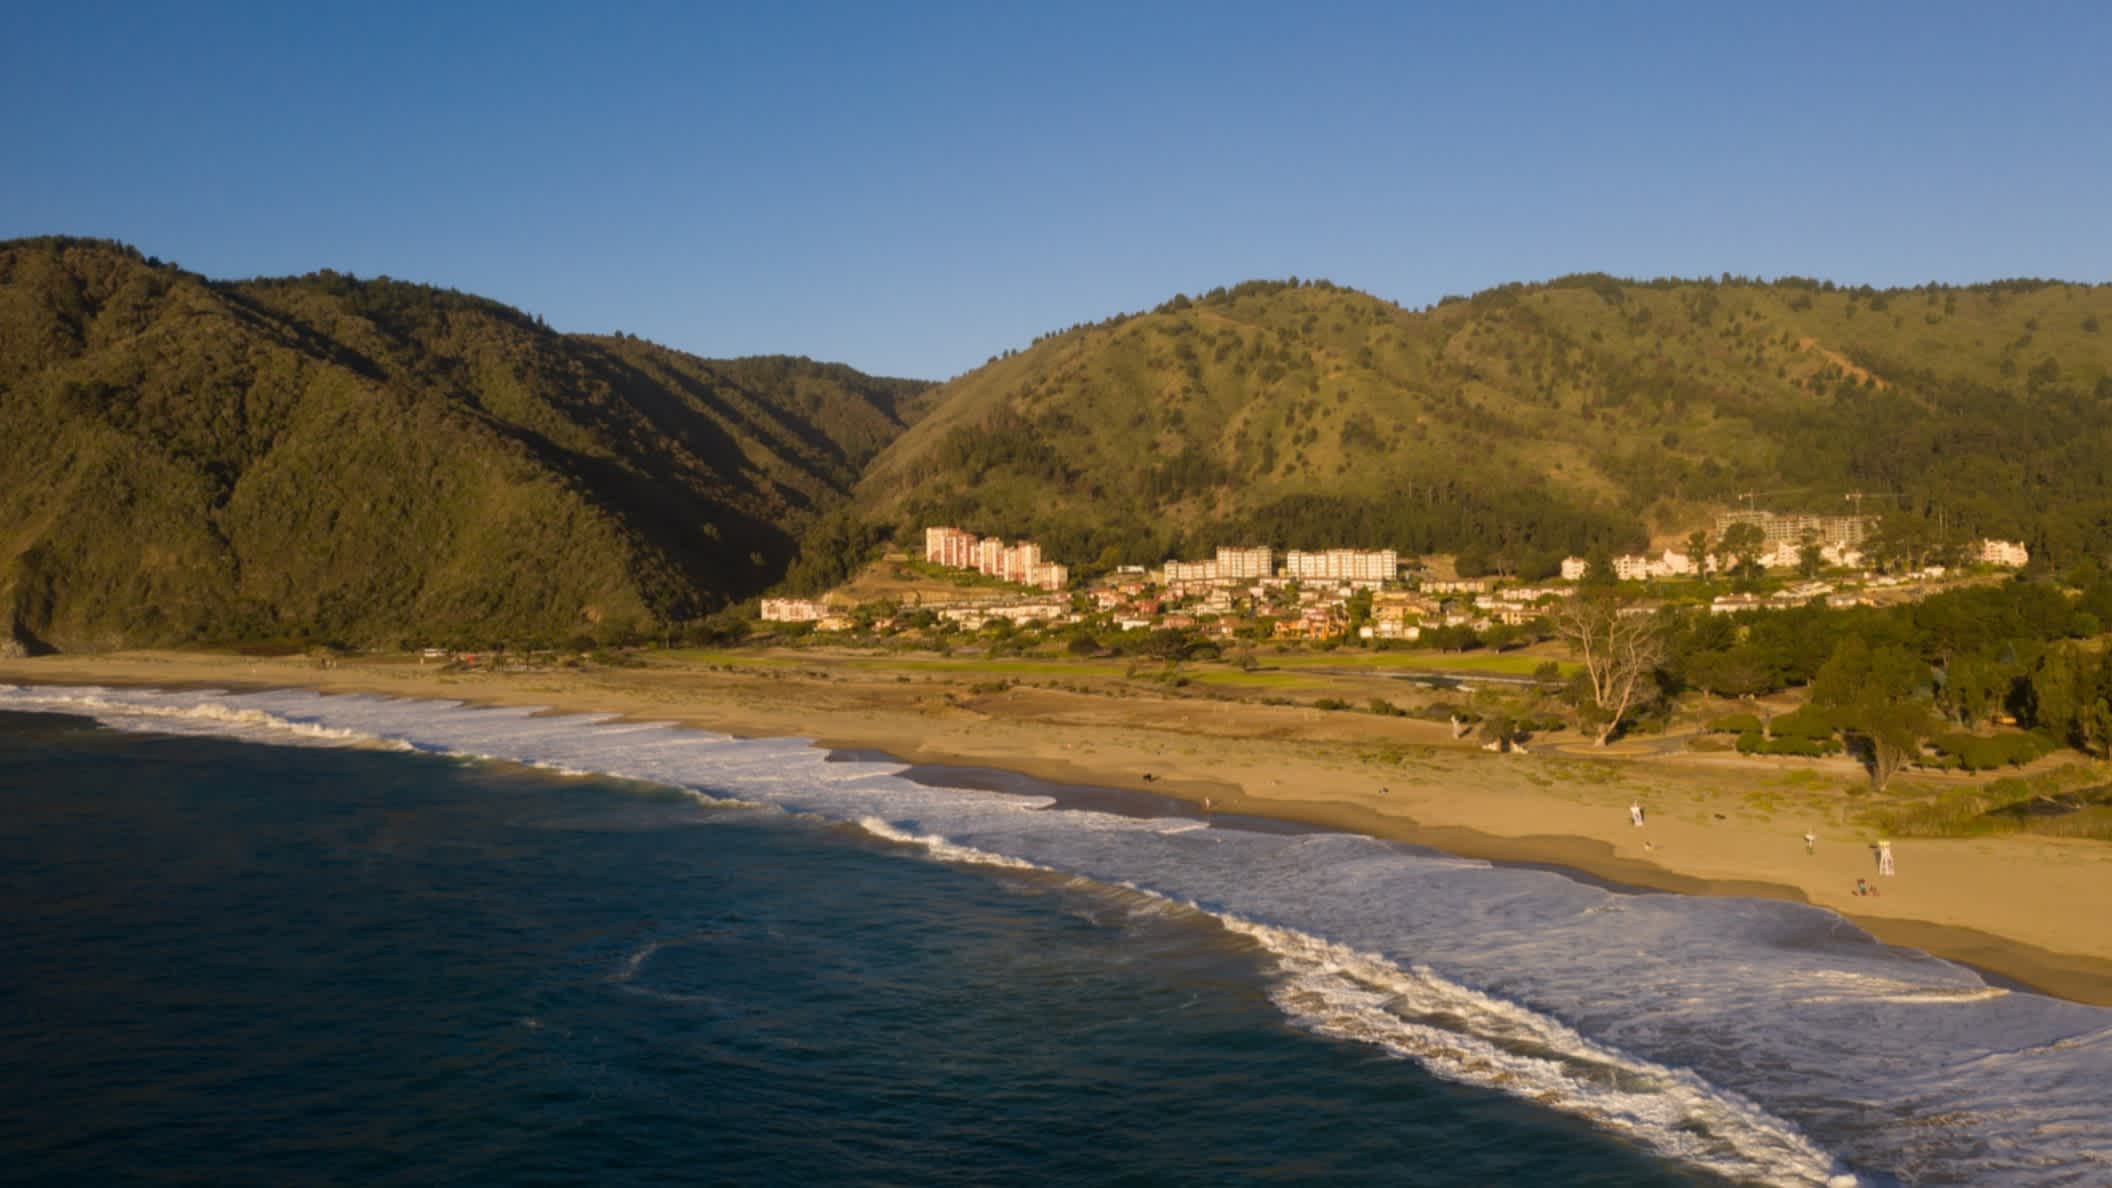 Der Luftblick auf den Strand Playa Grande in Chile bei blauem Himmel, mit Wellen im Wasser und dem Gebirge im Hintergrund sowie dem Ort Tongoy im Bild.